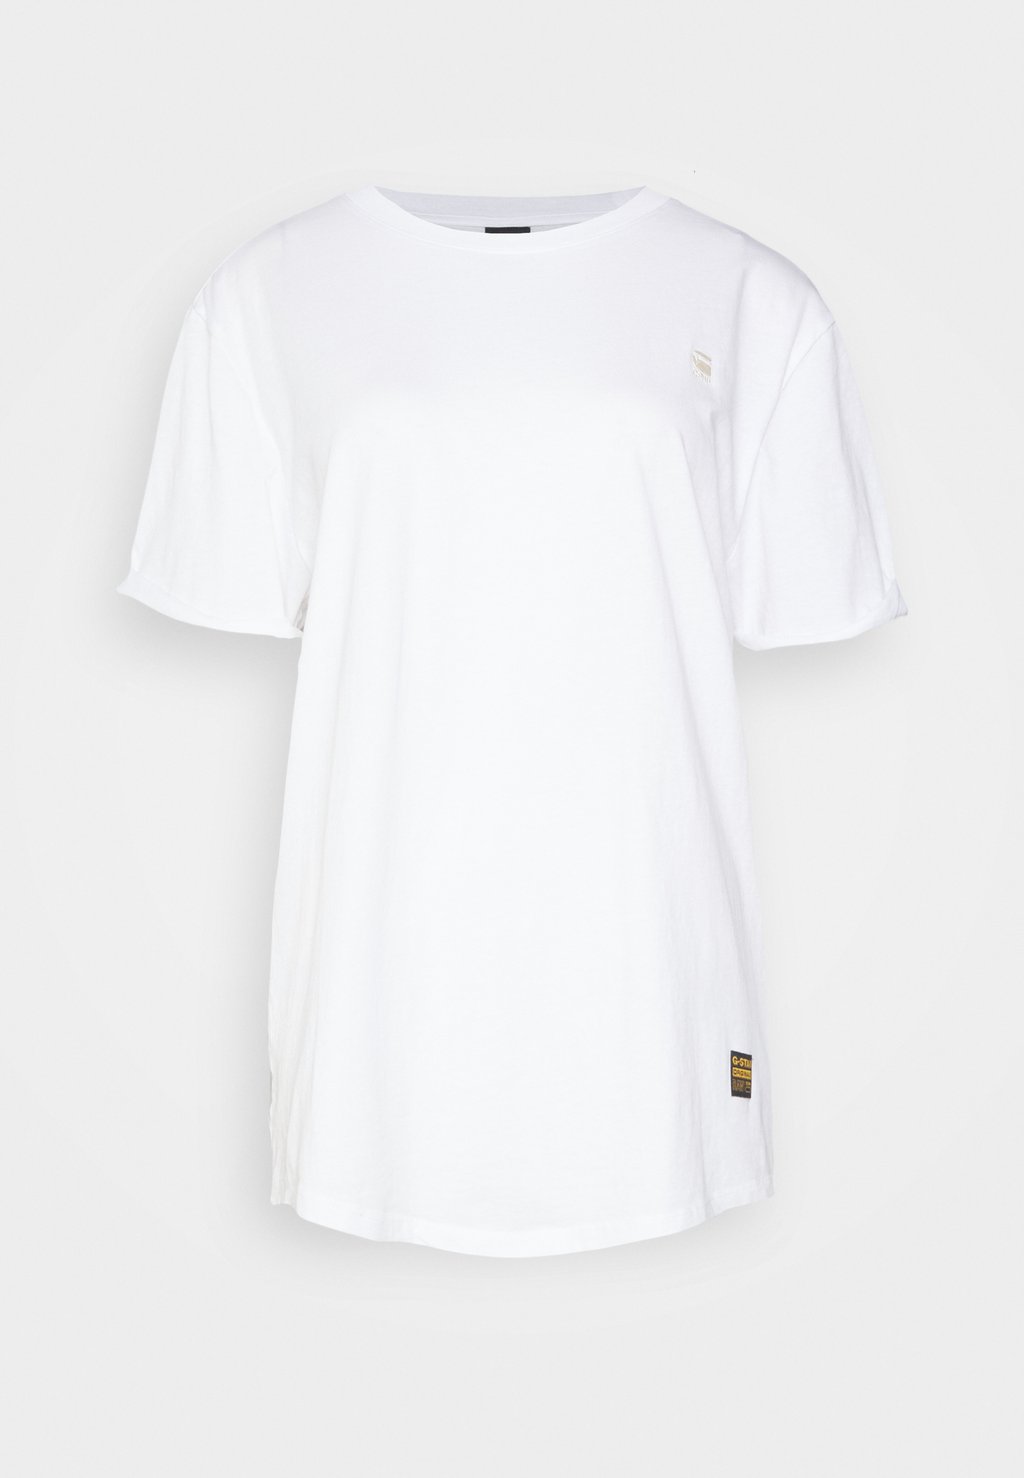 Базовая футболка G-Star, белый базовая футболка набор base 2 g star белый